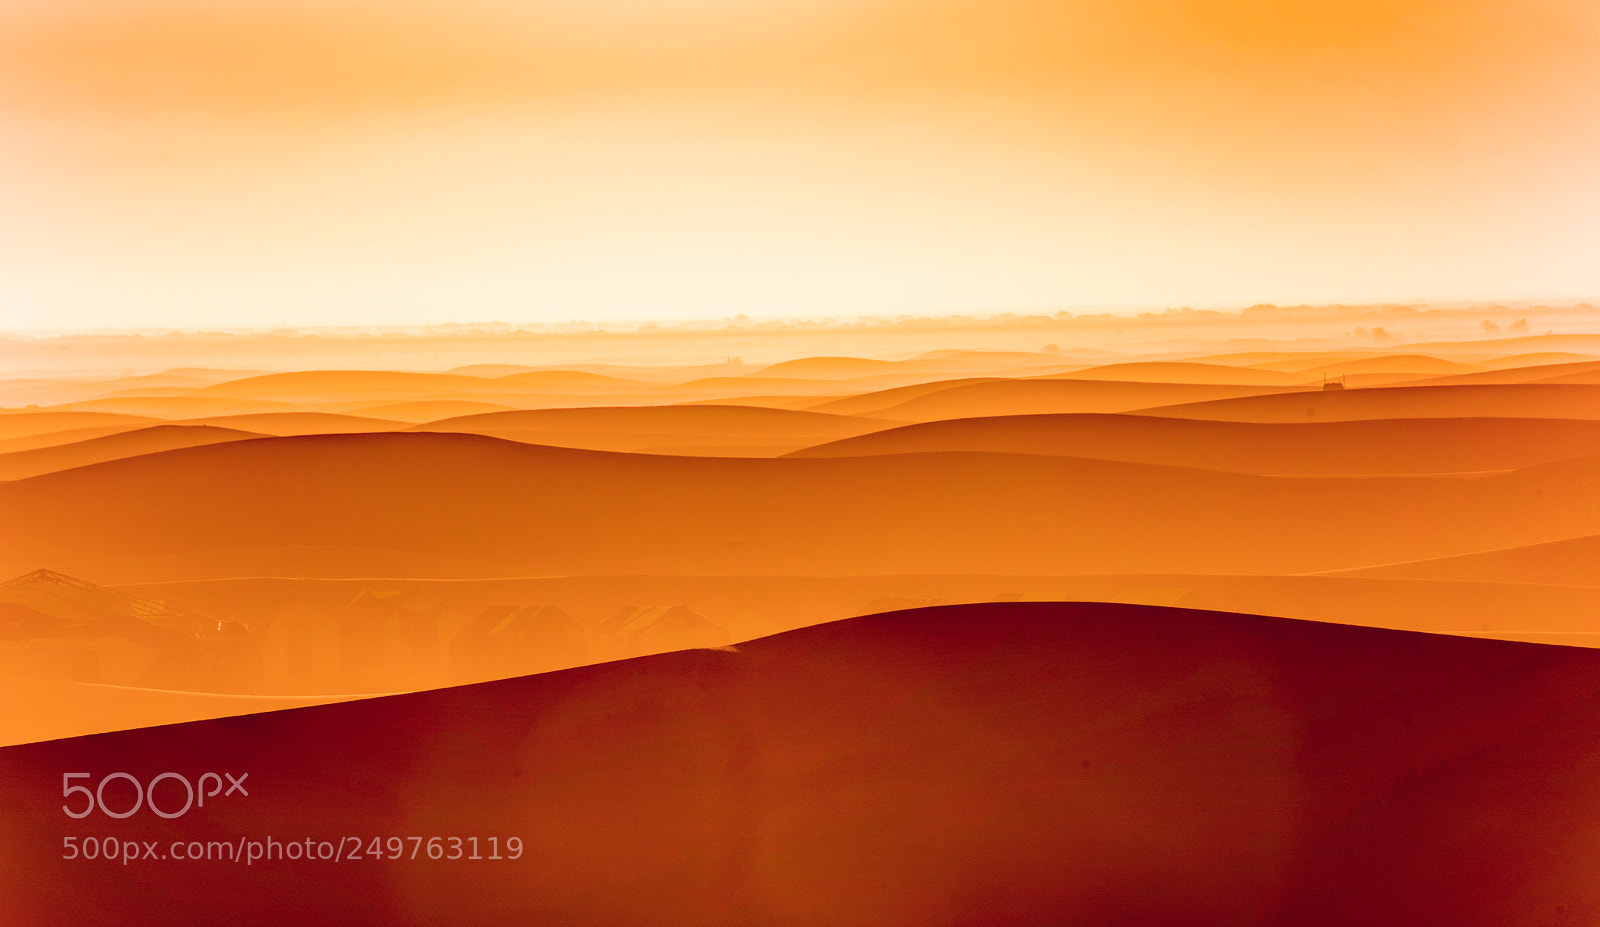 Nikon D750 sample photo. Sahara sunrise photography